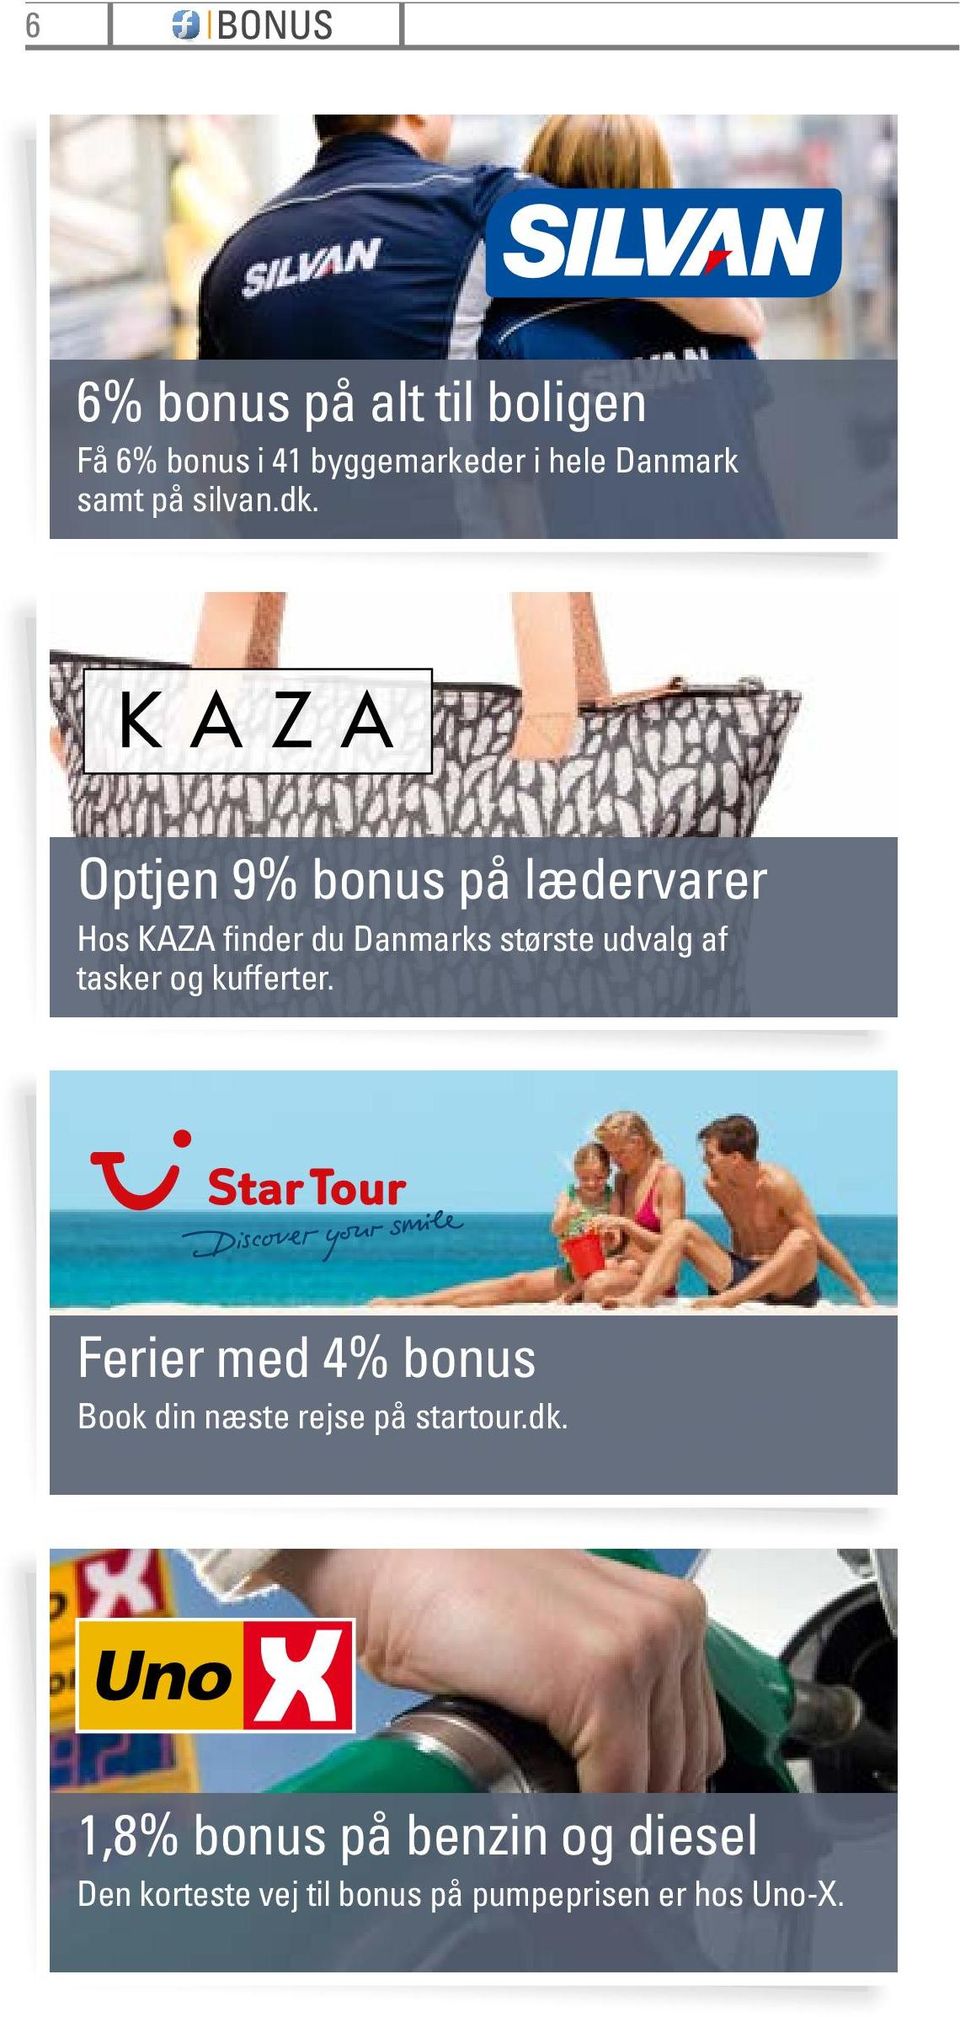 Optjen 9% bonus på lædervarer Hos KAZA finder du Danmarks største udvalg af tasker